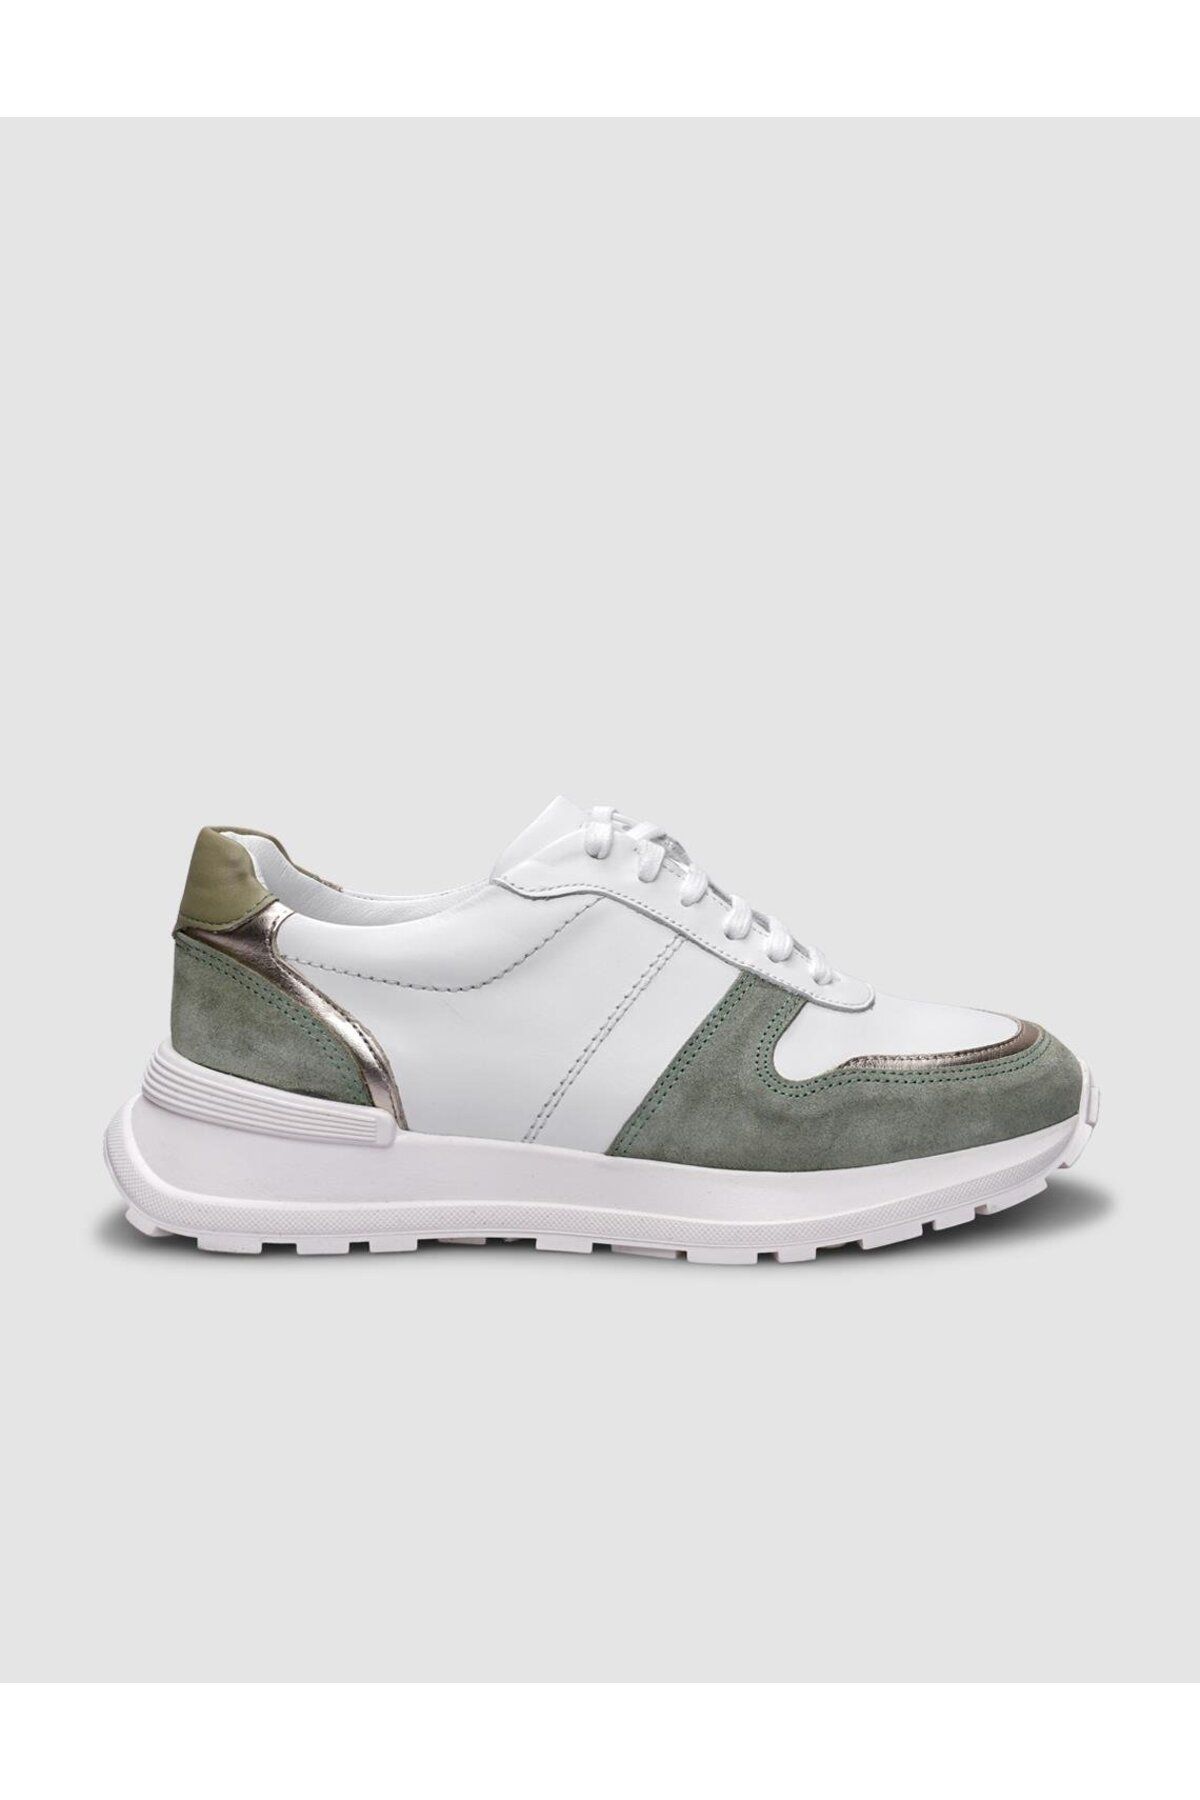 Cabani %100 Hakiki Deri Beyaz - Yeşil Bağcıklı Kadın Spor Ayakkabı